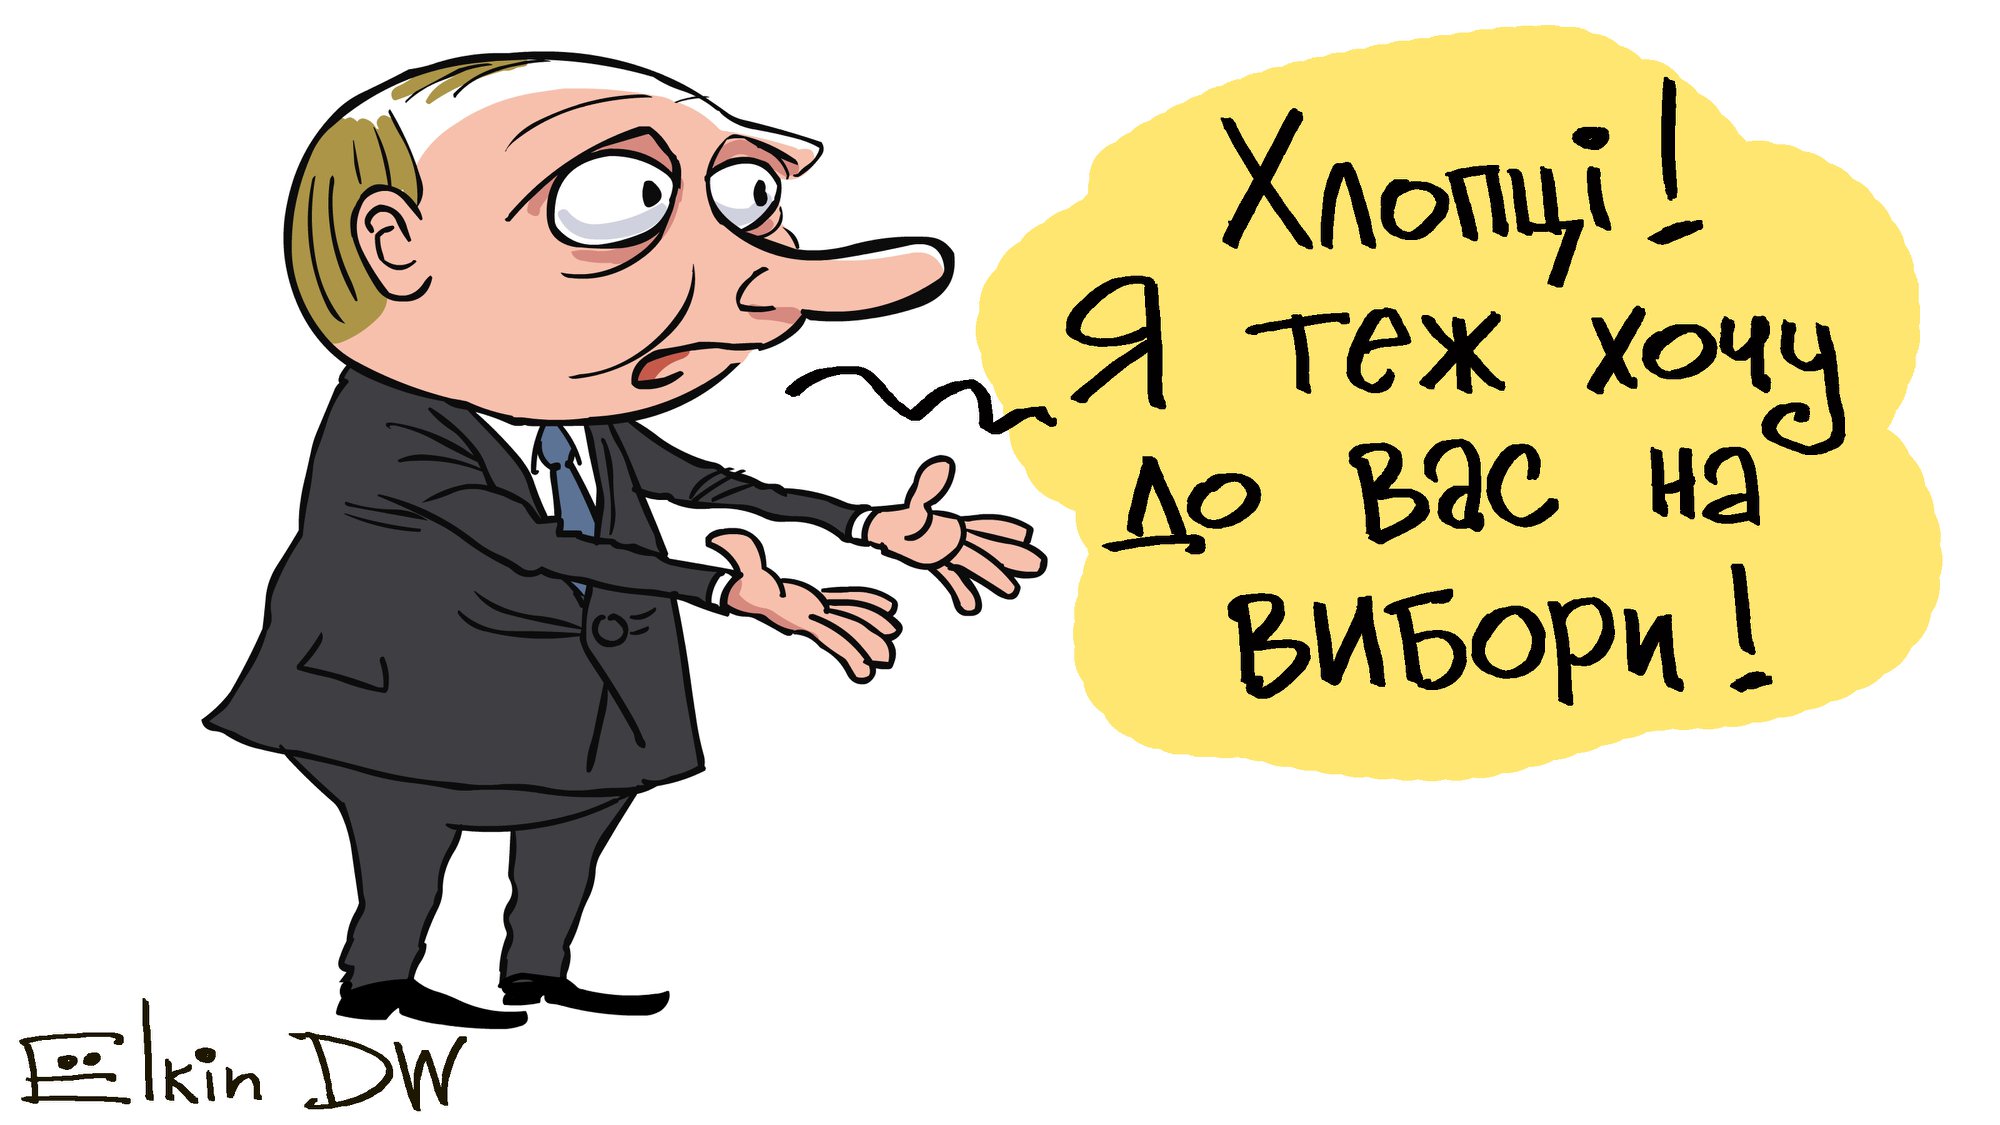 В РФ известный карикатурист Елкин ярко "подколол" Путина насчет выборов в Украине: "Хлопці, я теж хочу до вас"